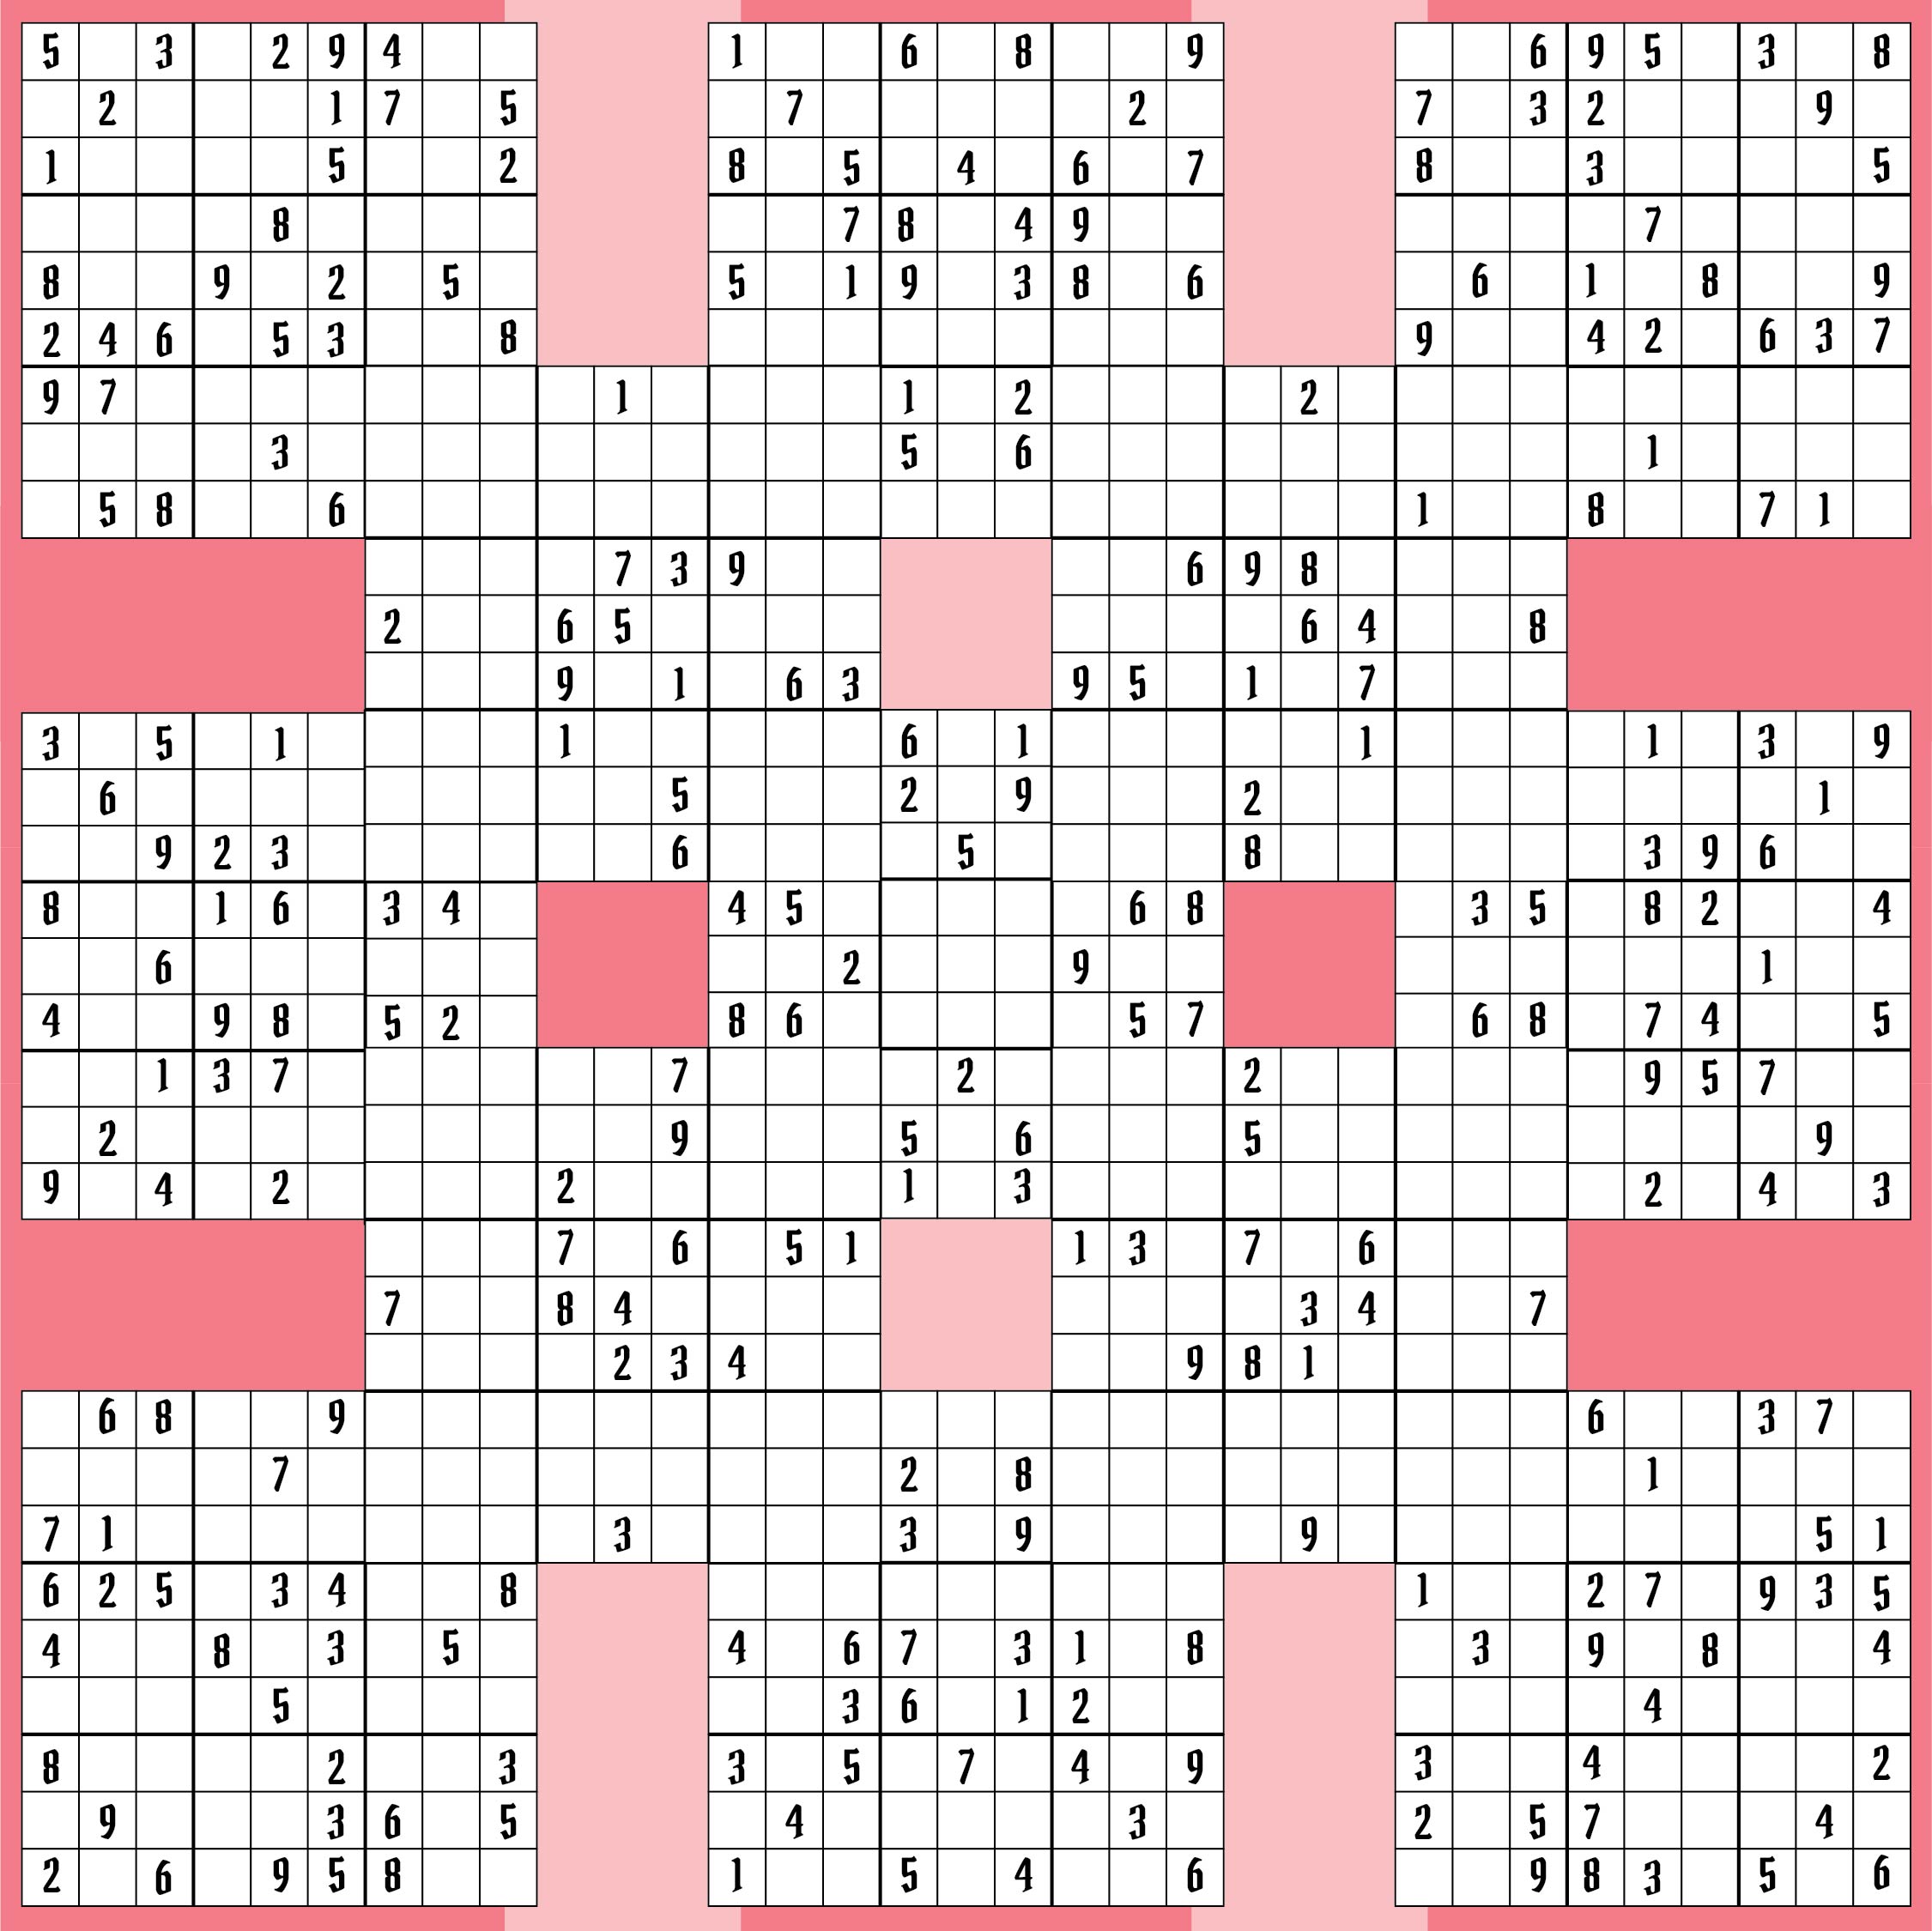 Free Printable Samurai Sudoku Puzzles Sudoku Puzzles Sudoku Printable Free Printable Puzzles 